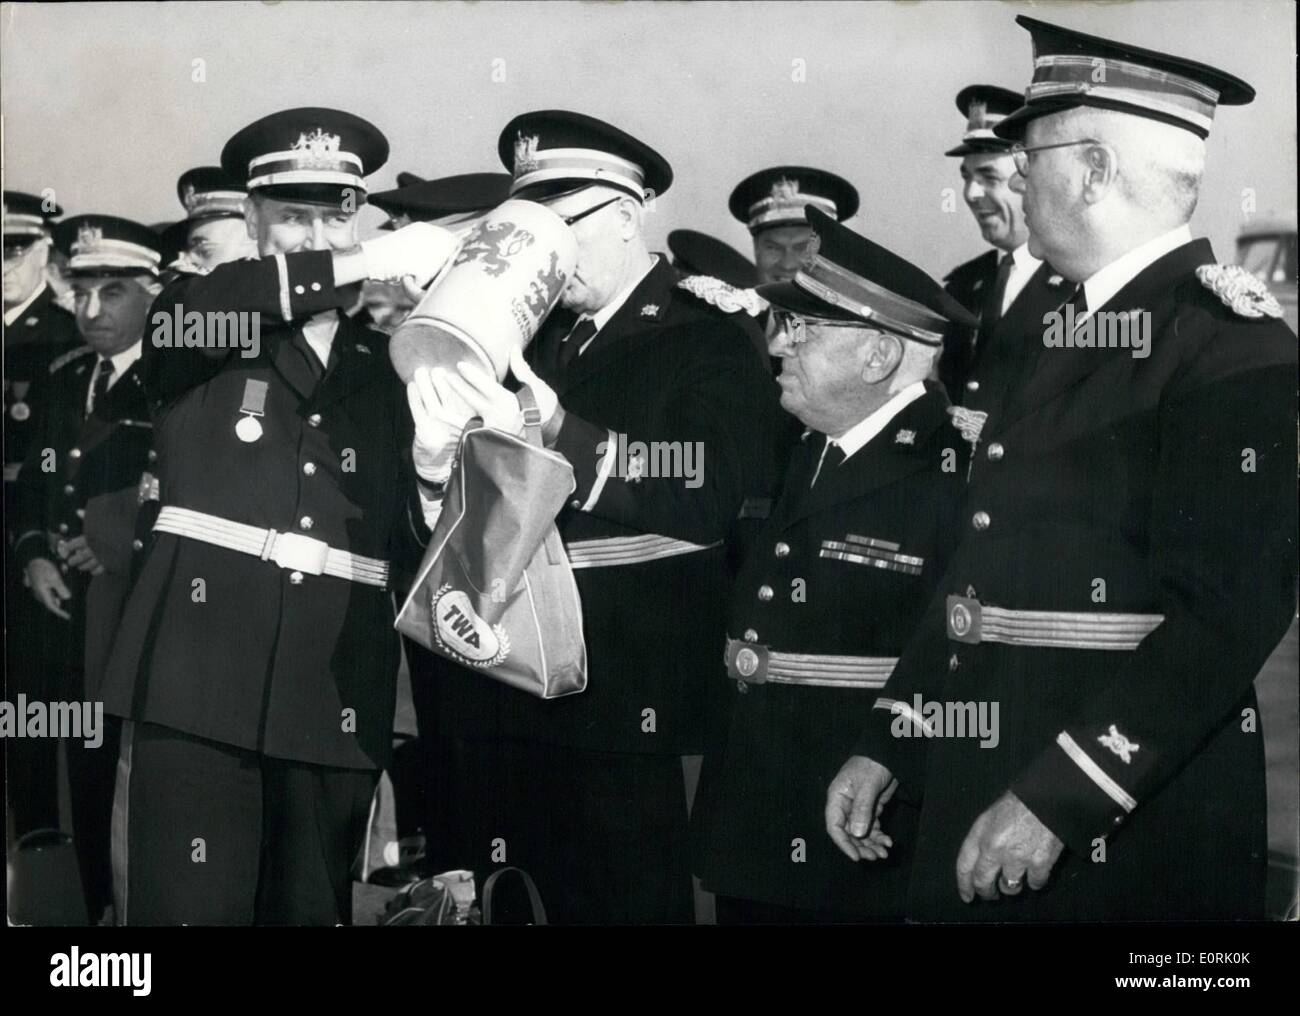 Ottobre 10, 1959 - arrivo di ''Antica ed Onorevole Compagnia di Artiglieria'' di Boston, Massachusetts-riem-aeroporto: circa 200 membri del gruppo sono stati accolti con grandi boccali di birra. Il capitano Thomas P. Dillon è la presentazione di un ''Mug'' per i soldati. Foto Stock